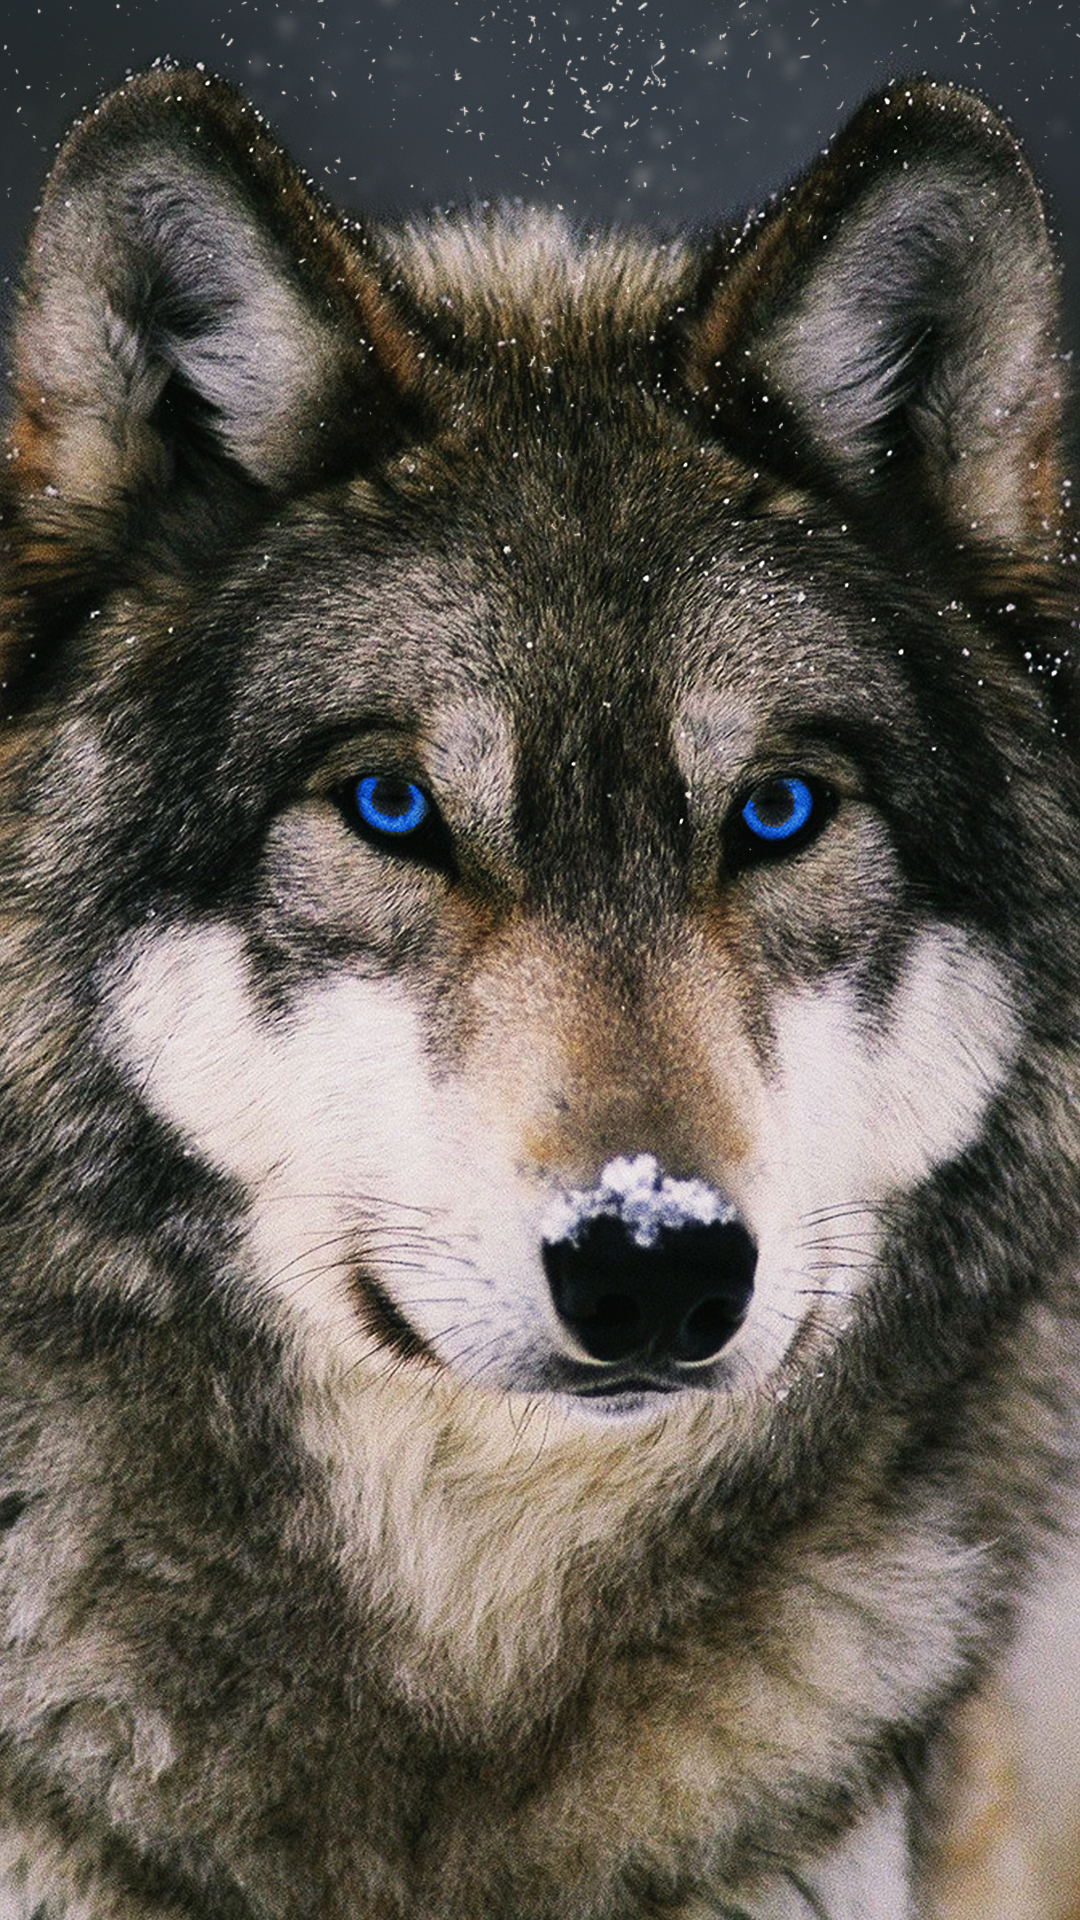 オオカミの電話の壁紙,犬,サールース・ウルフドッグ,狼犬,チェコスロバキアンウルフドッグ,狼